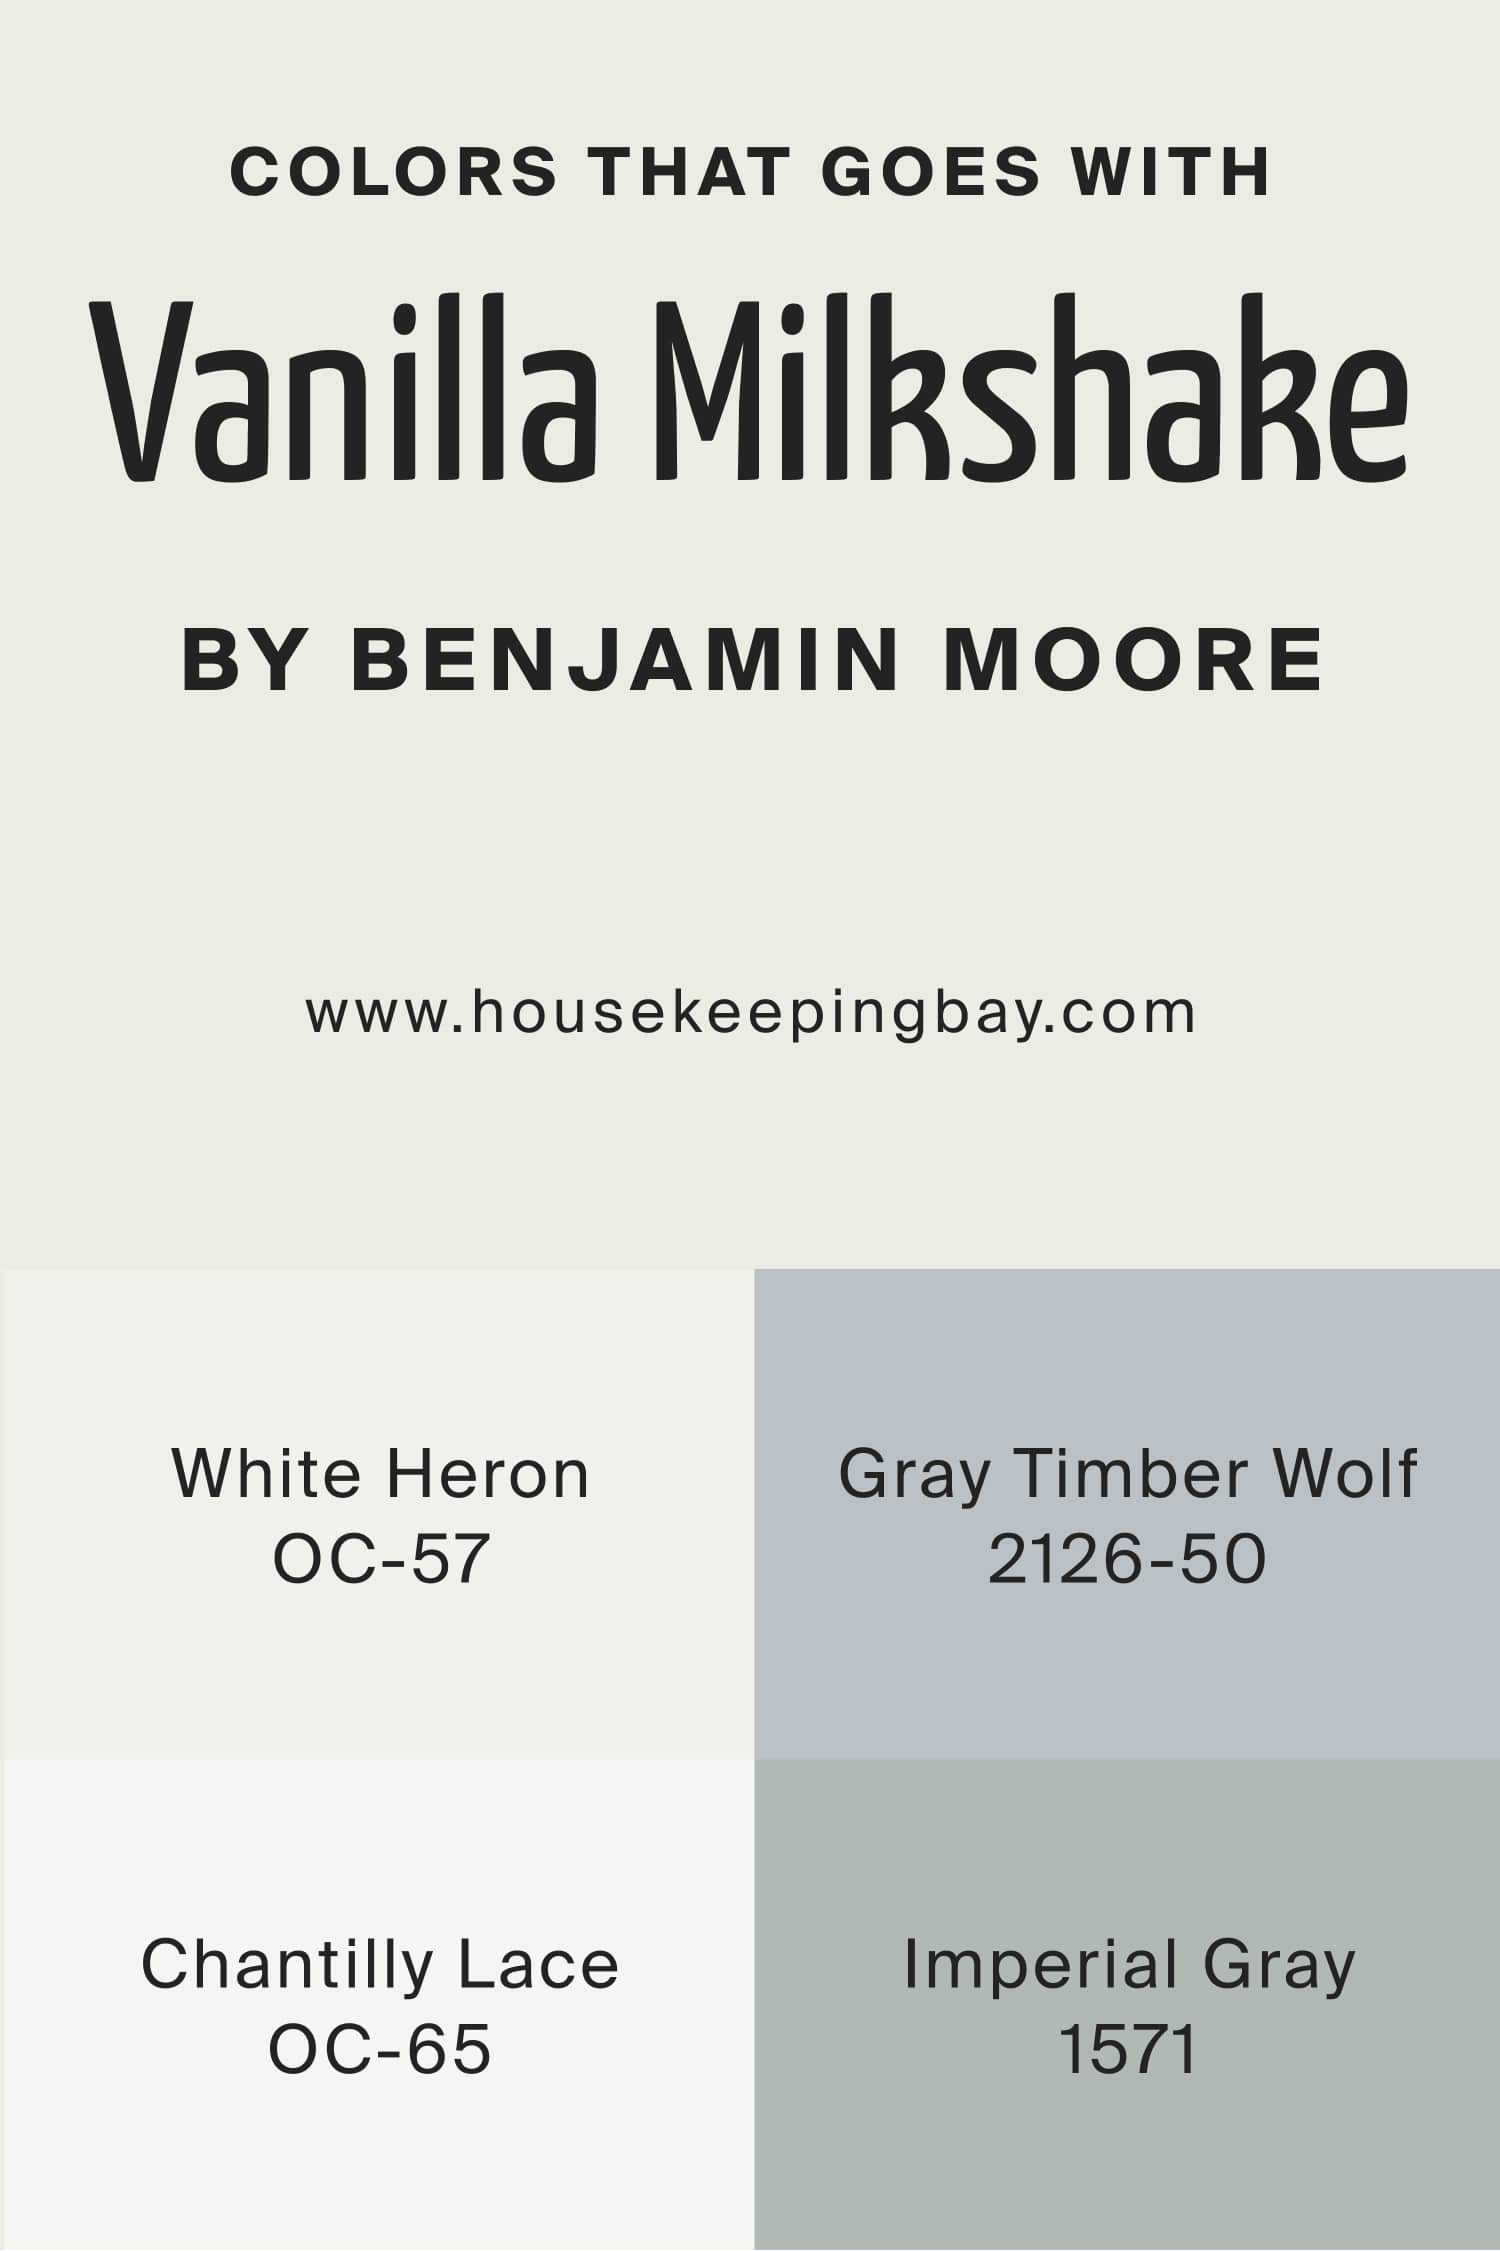 Colors that goes with Vanilla Milkshake 2141 70 by Benjamin Moore